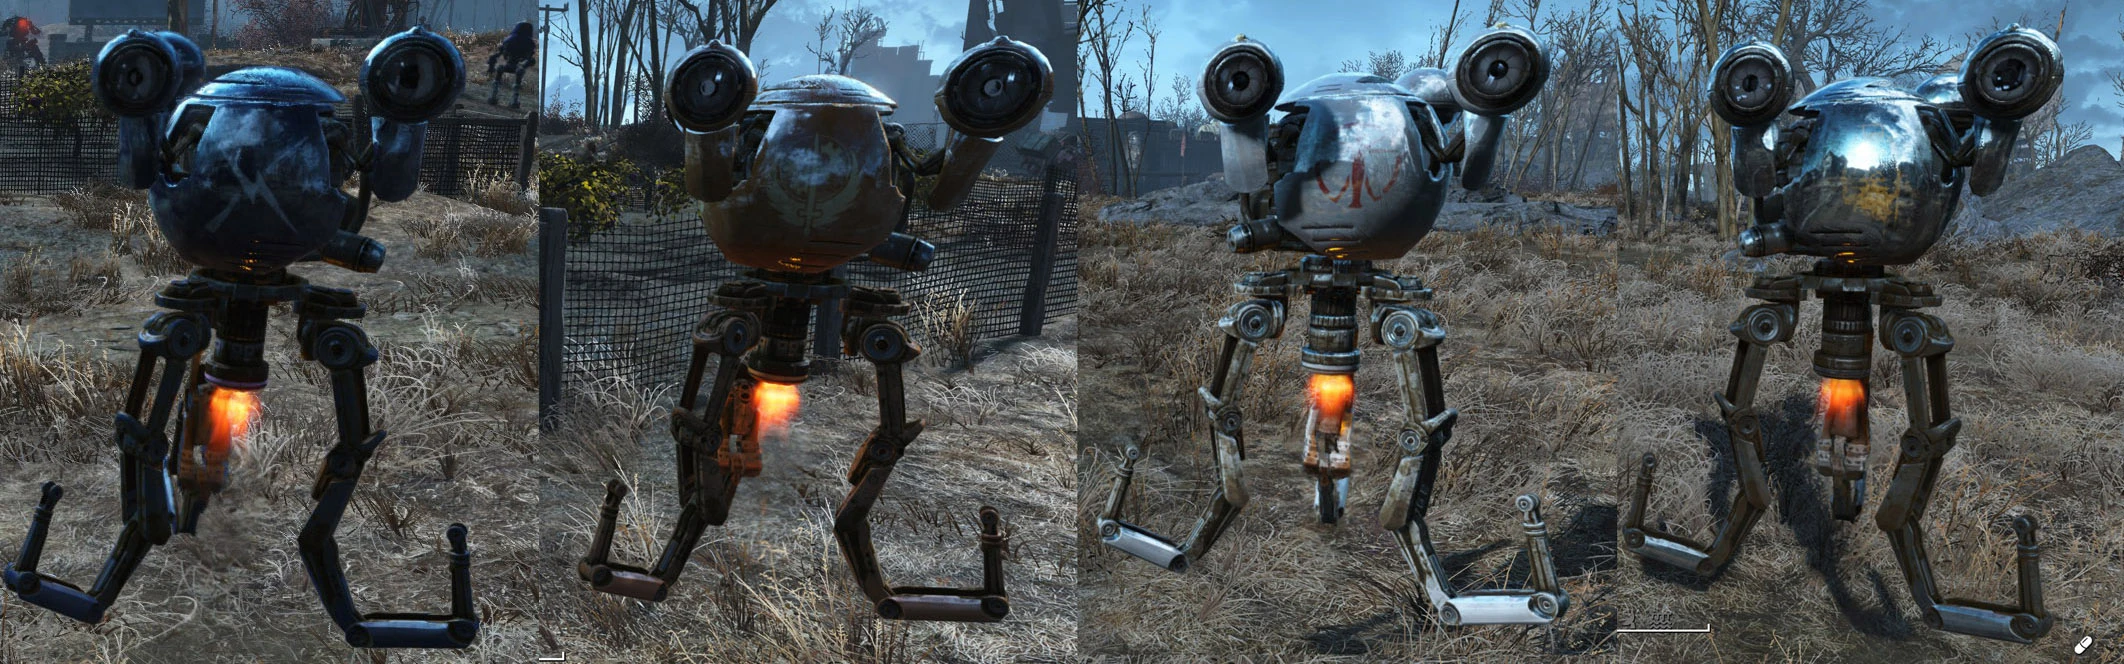 Fallout 4 automatron robots фото 44